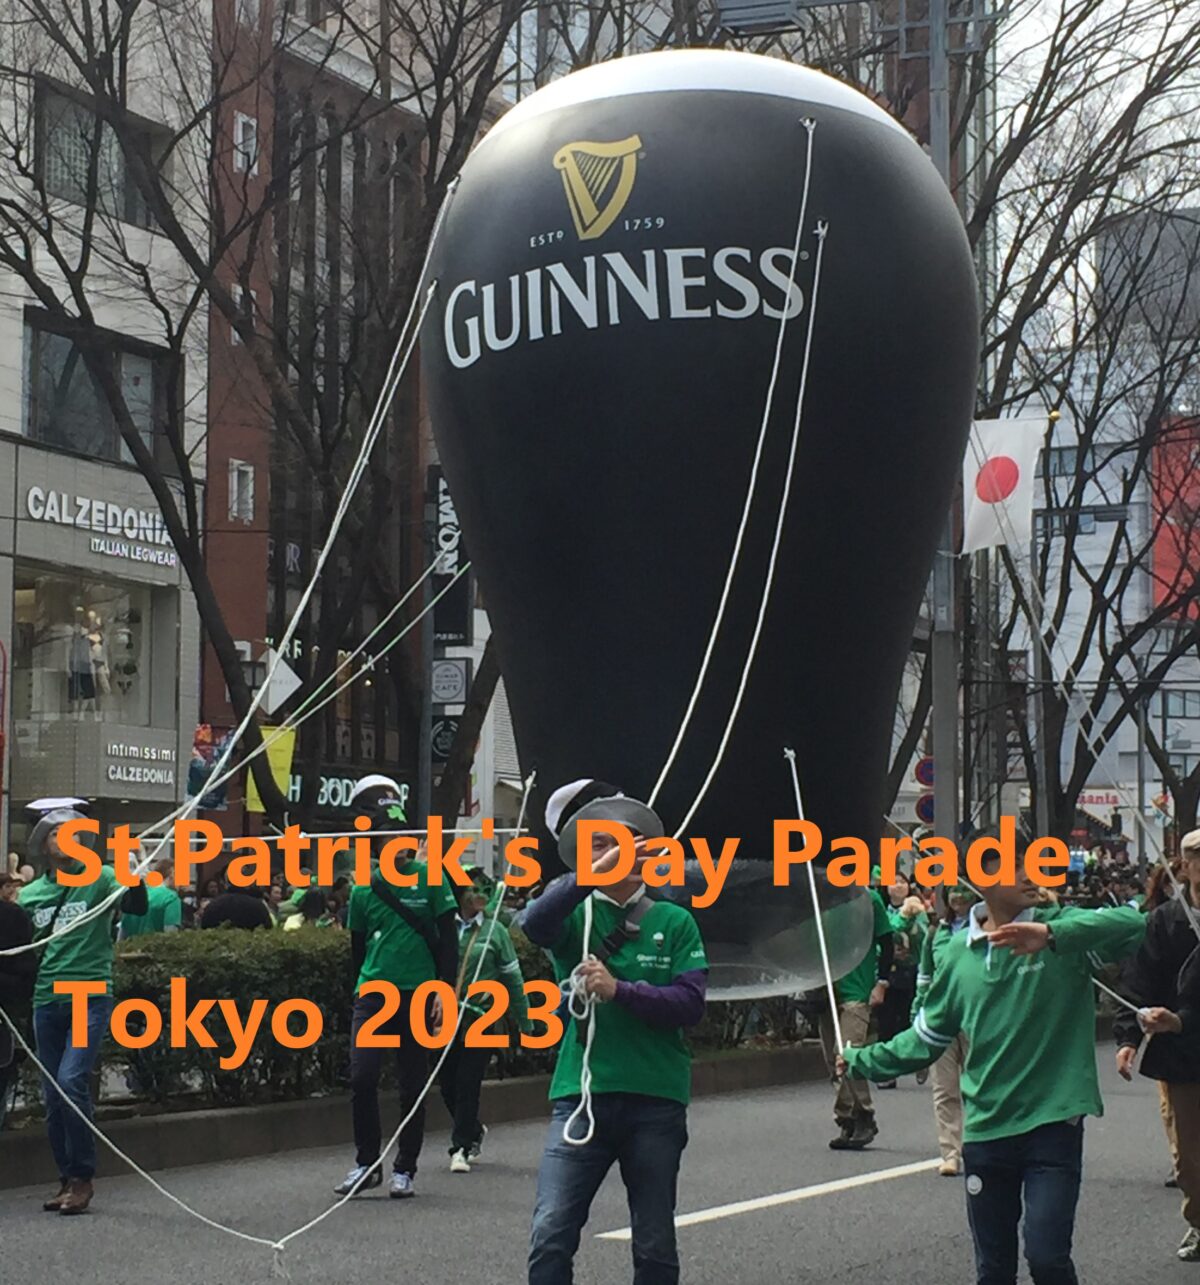 2023年3月12日(日) セントパトリックスデーパレード 東京 2023 @ 表参道